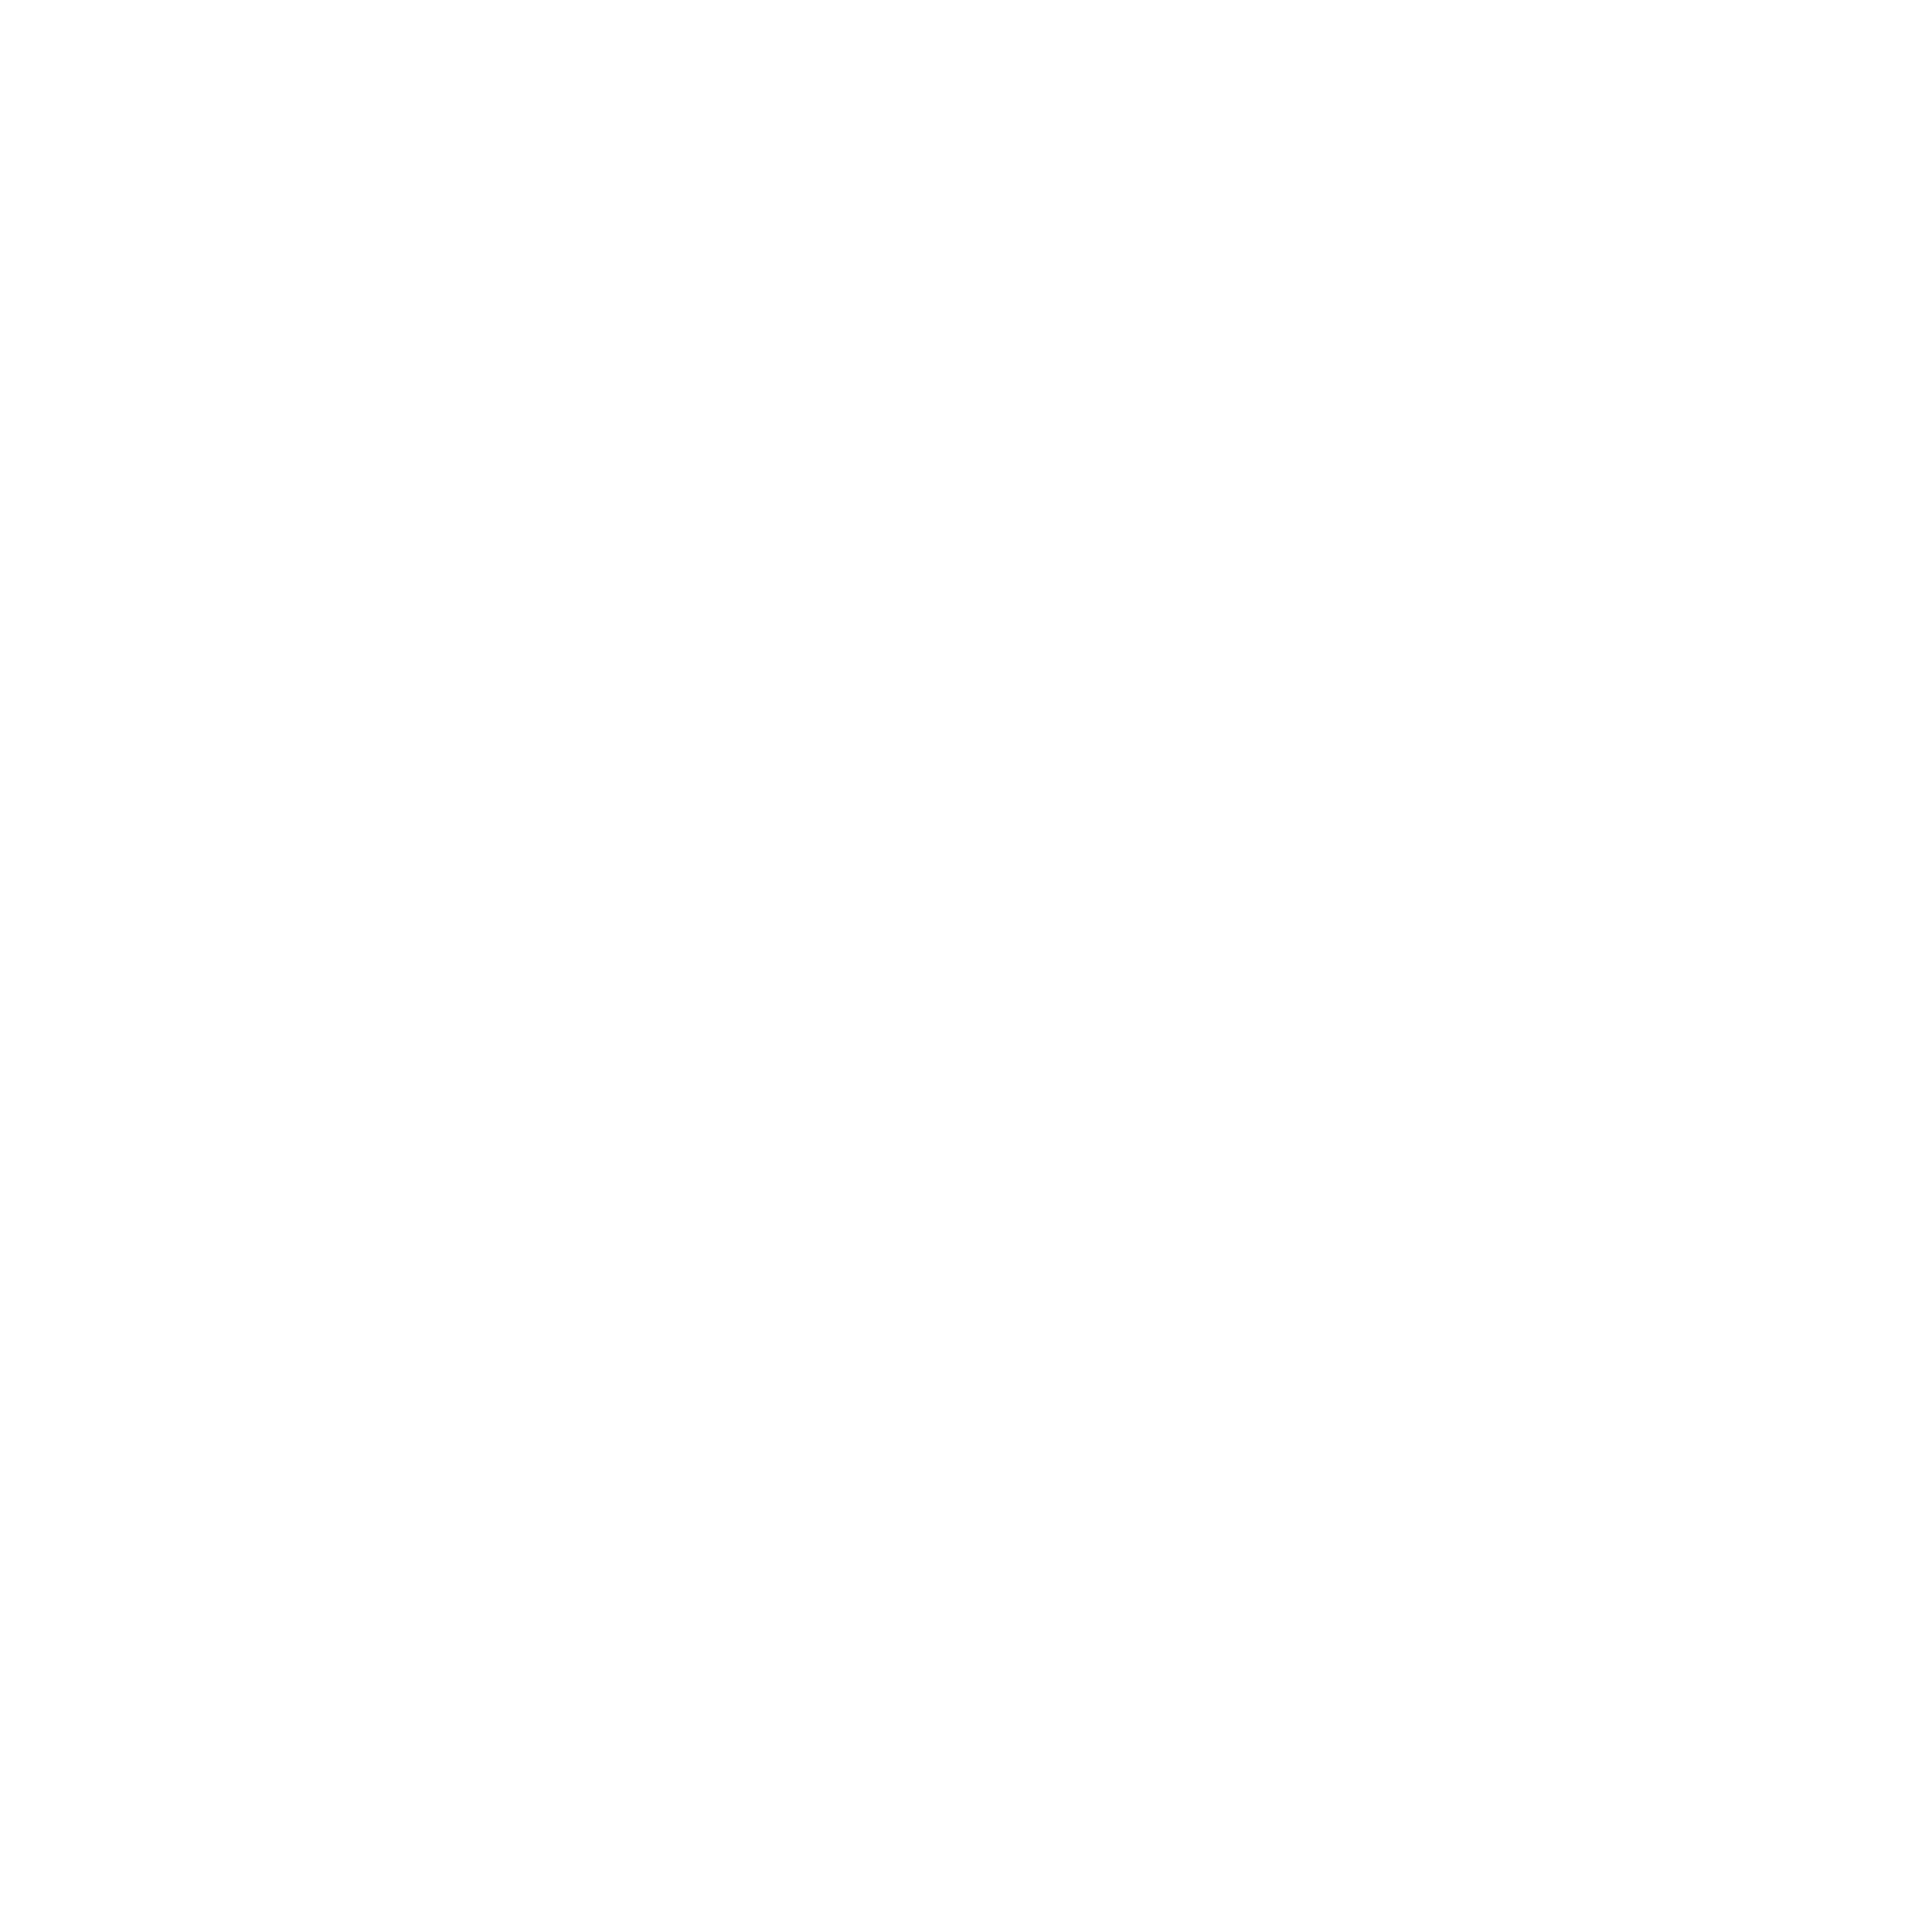 International investors Award